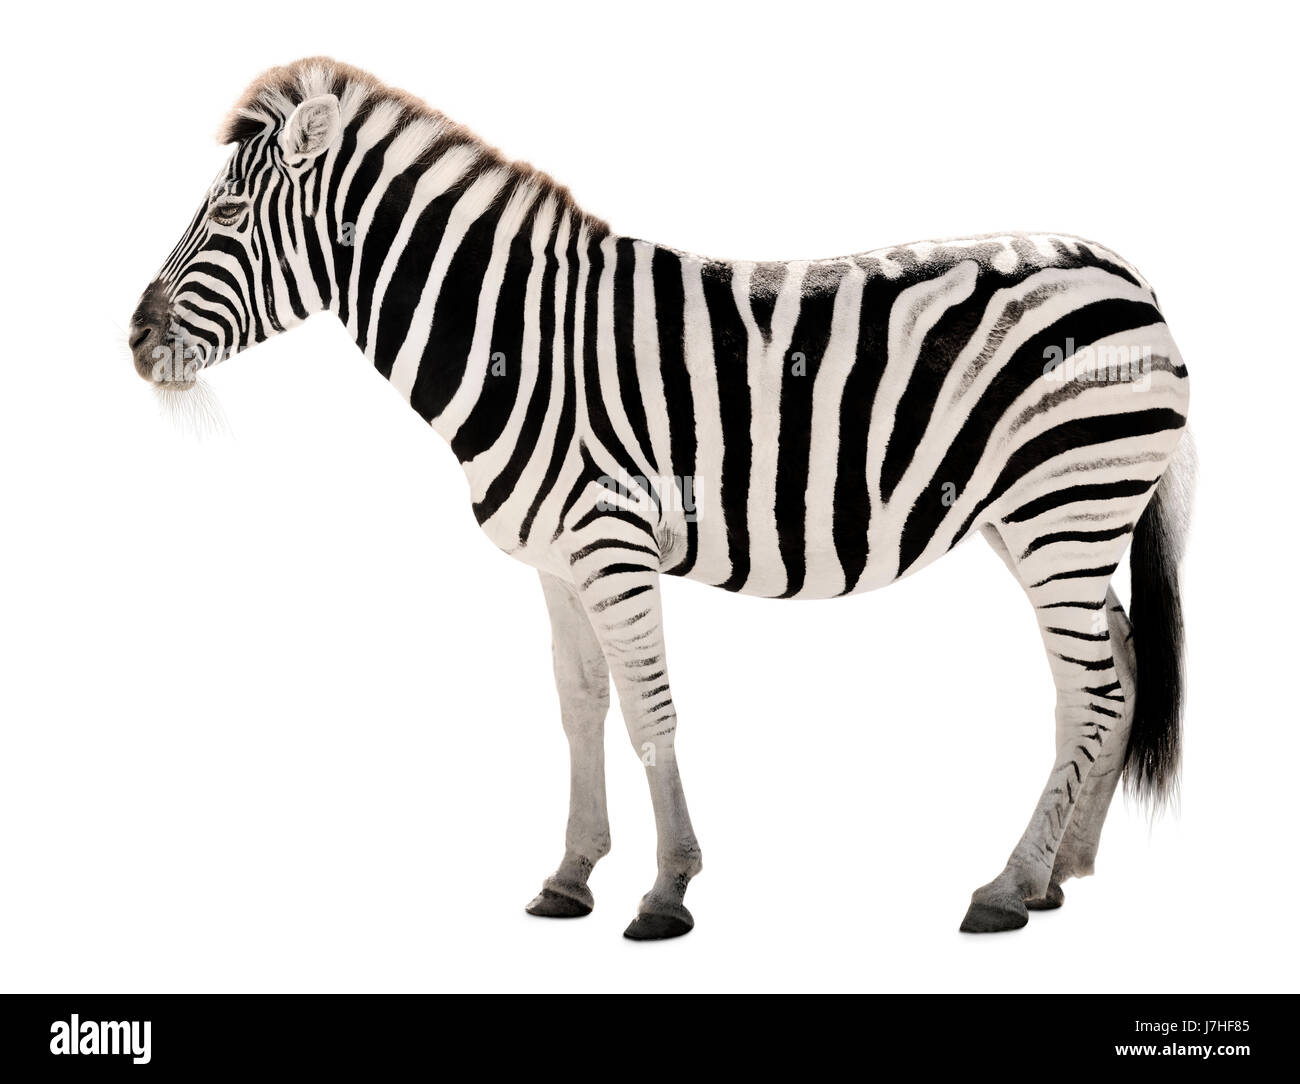 stately zebra on white background Stock Photo